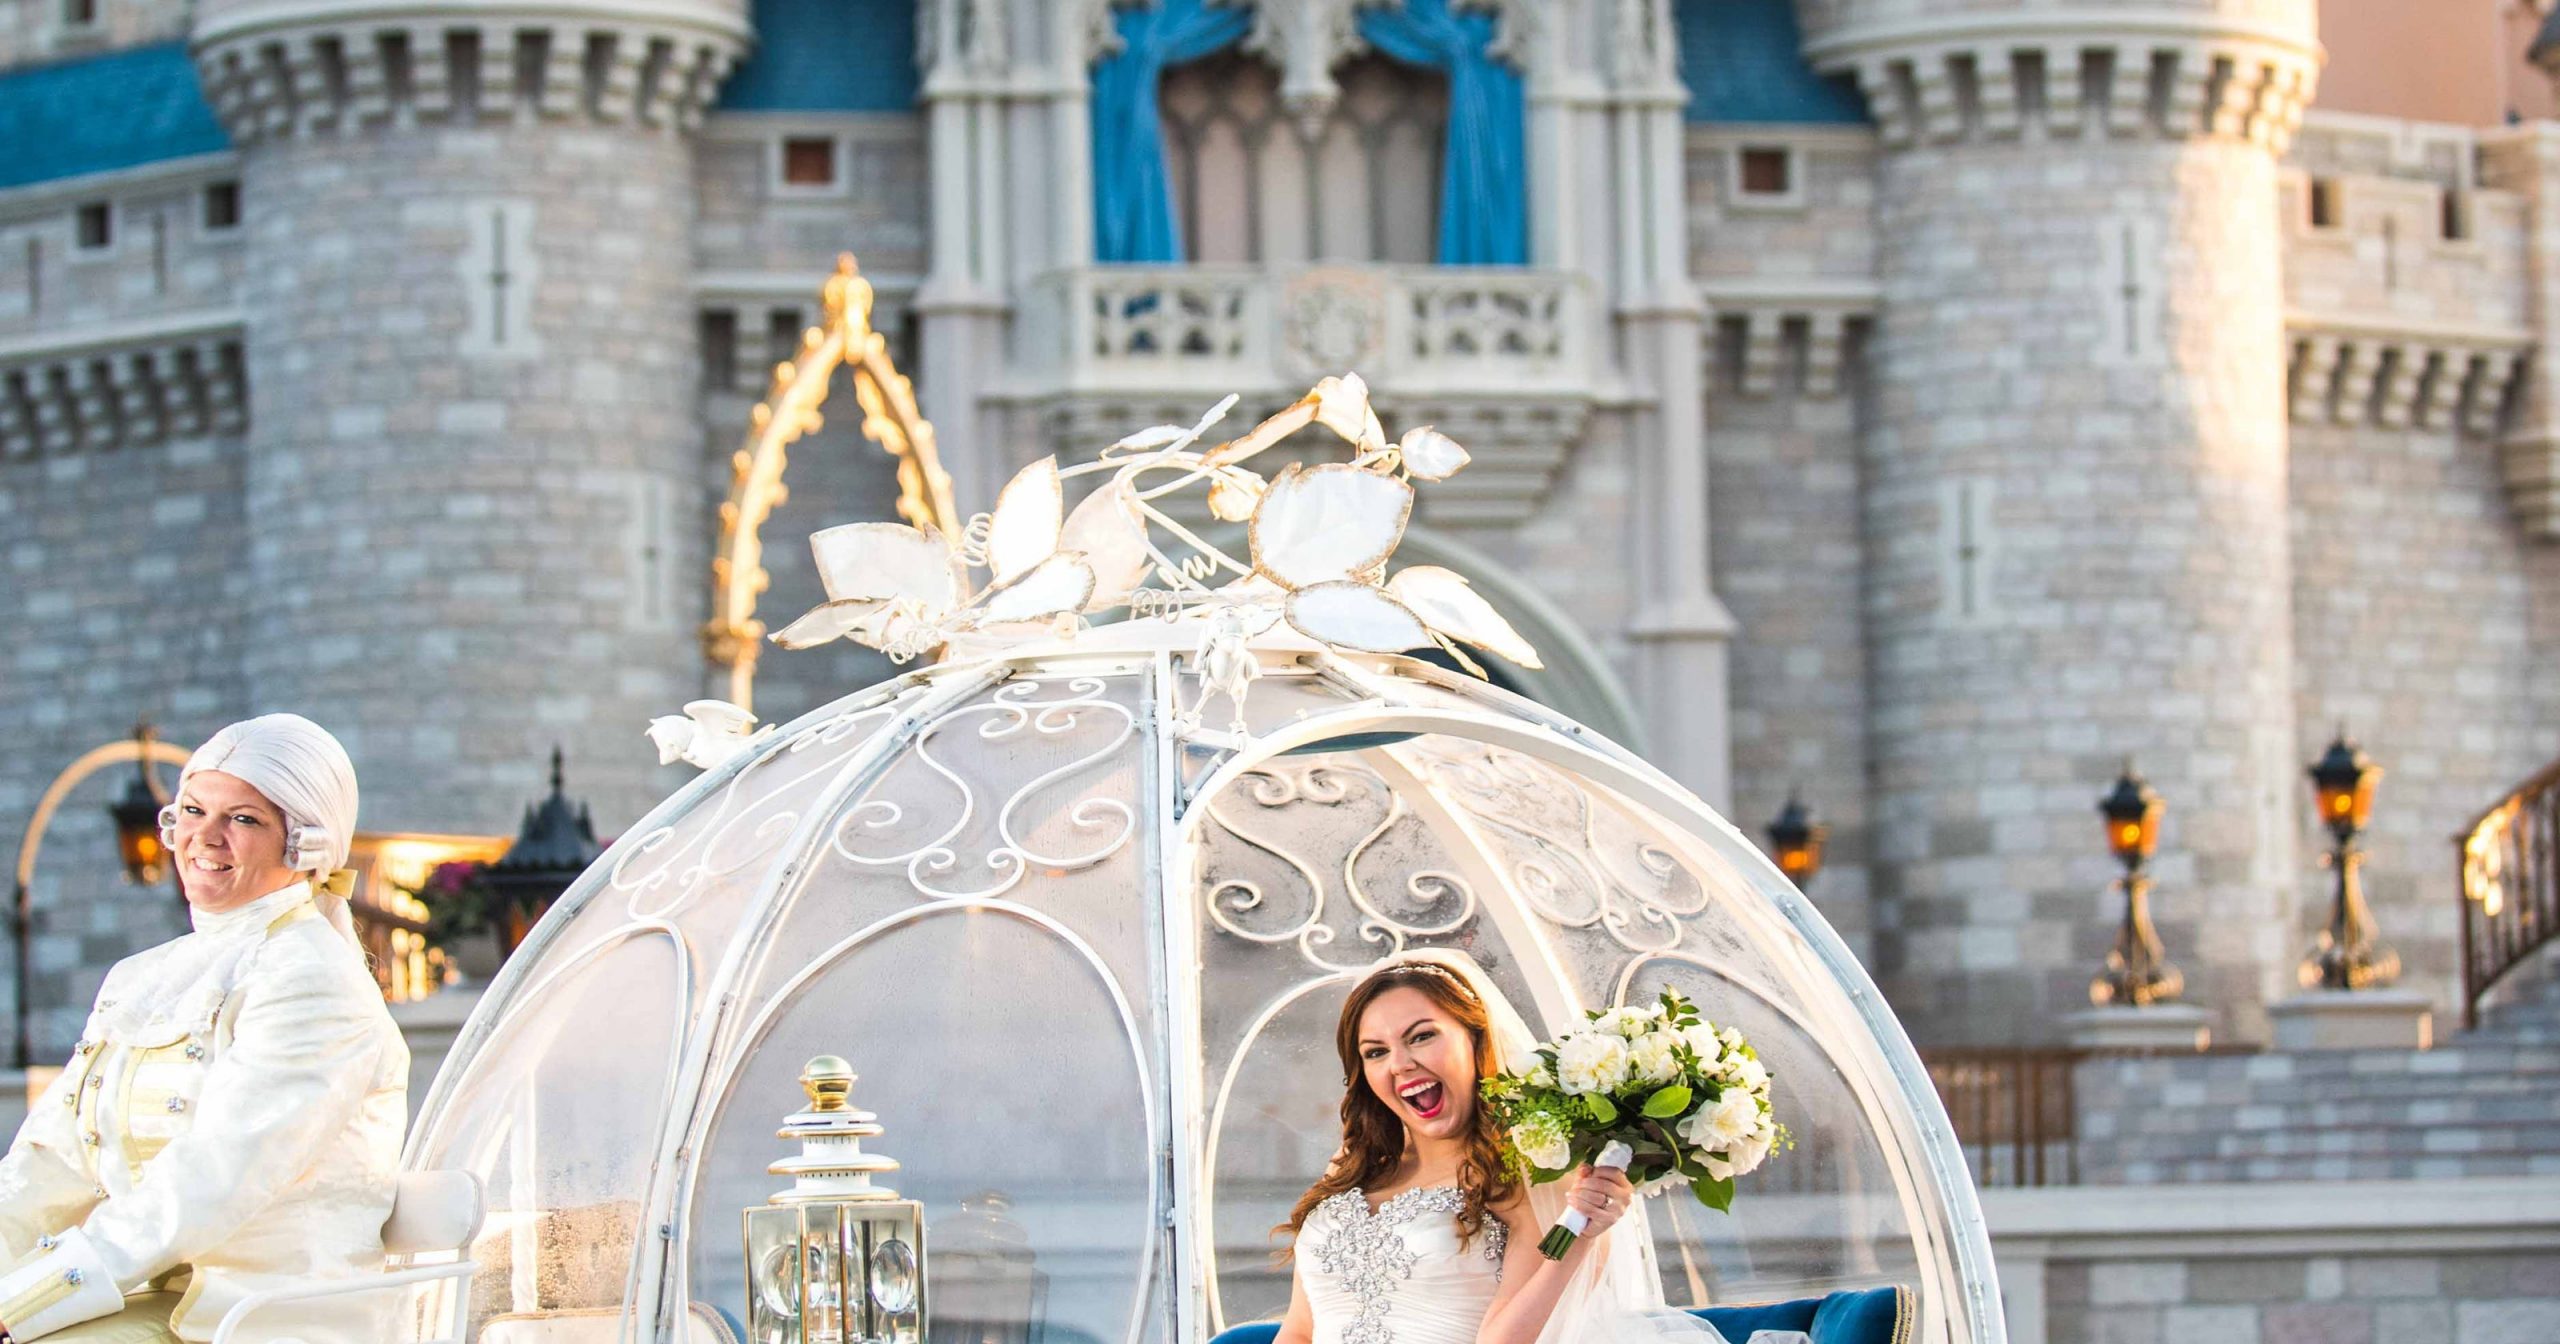 Want a Disney wedding? It